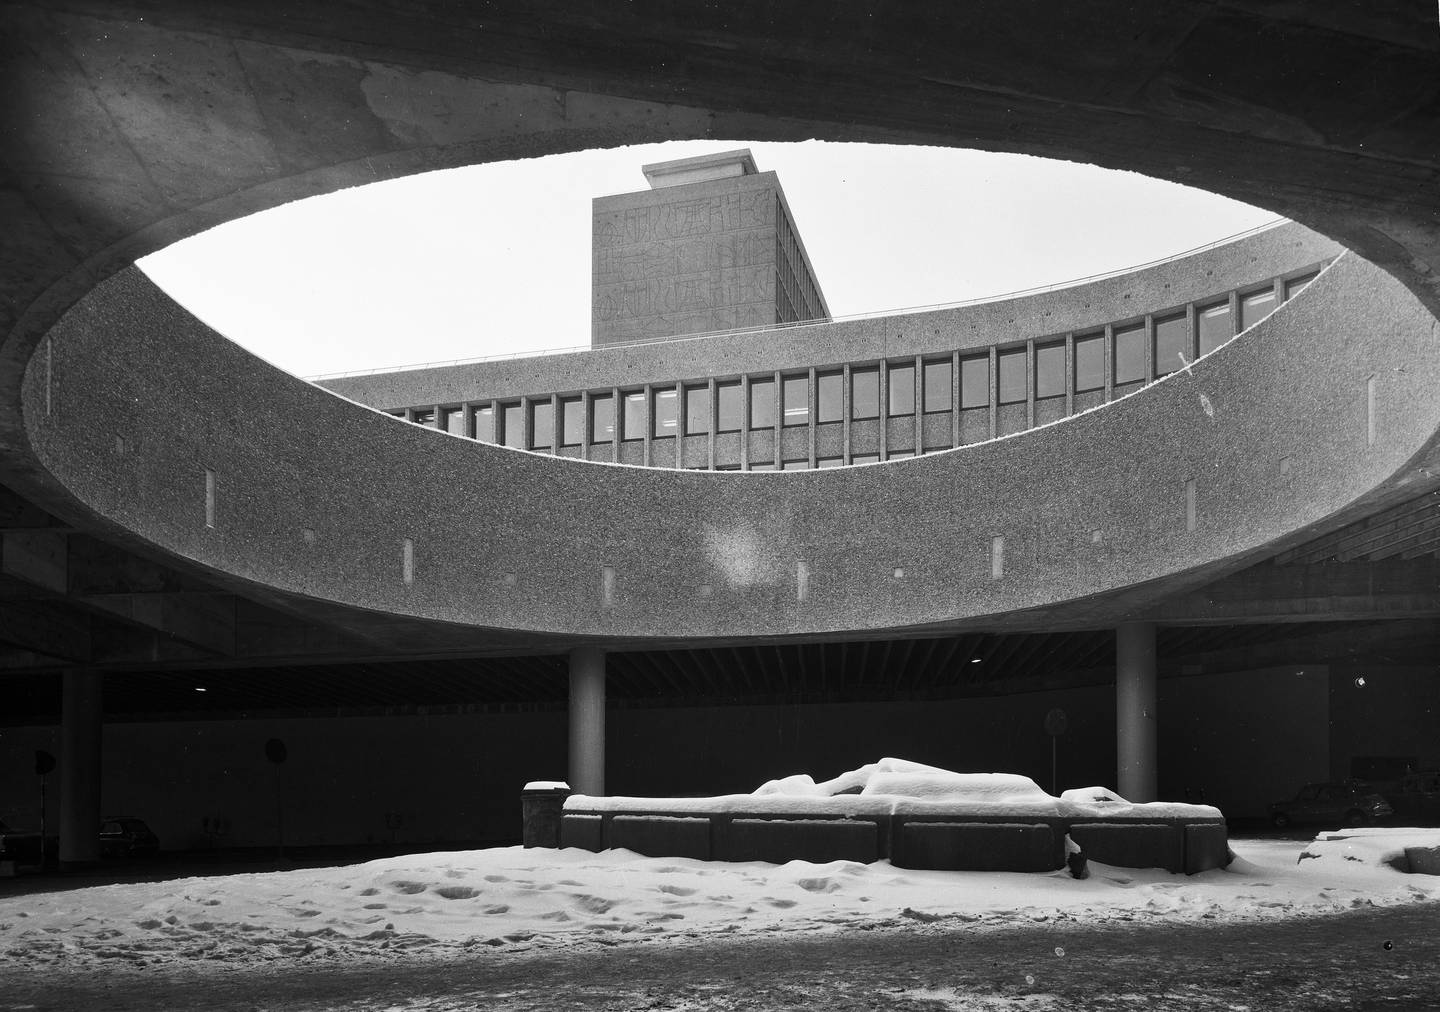 Eksteriørfoto av Y-blokka i Regjeringskvartalet. 
Arkitekt Viksjø vant arkitektkonkurransen i 1939. Høyblokka i kvartalet sto ferdig i 1958, mens Y-blokka ble føyd til i 1969. *** Local Caption *** Erling Viksjø